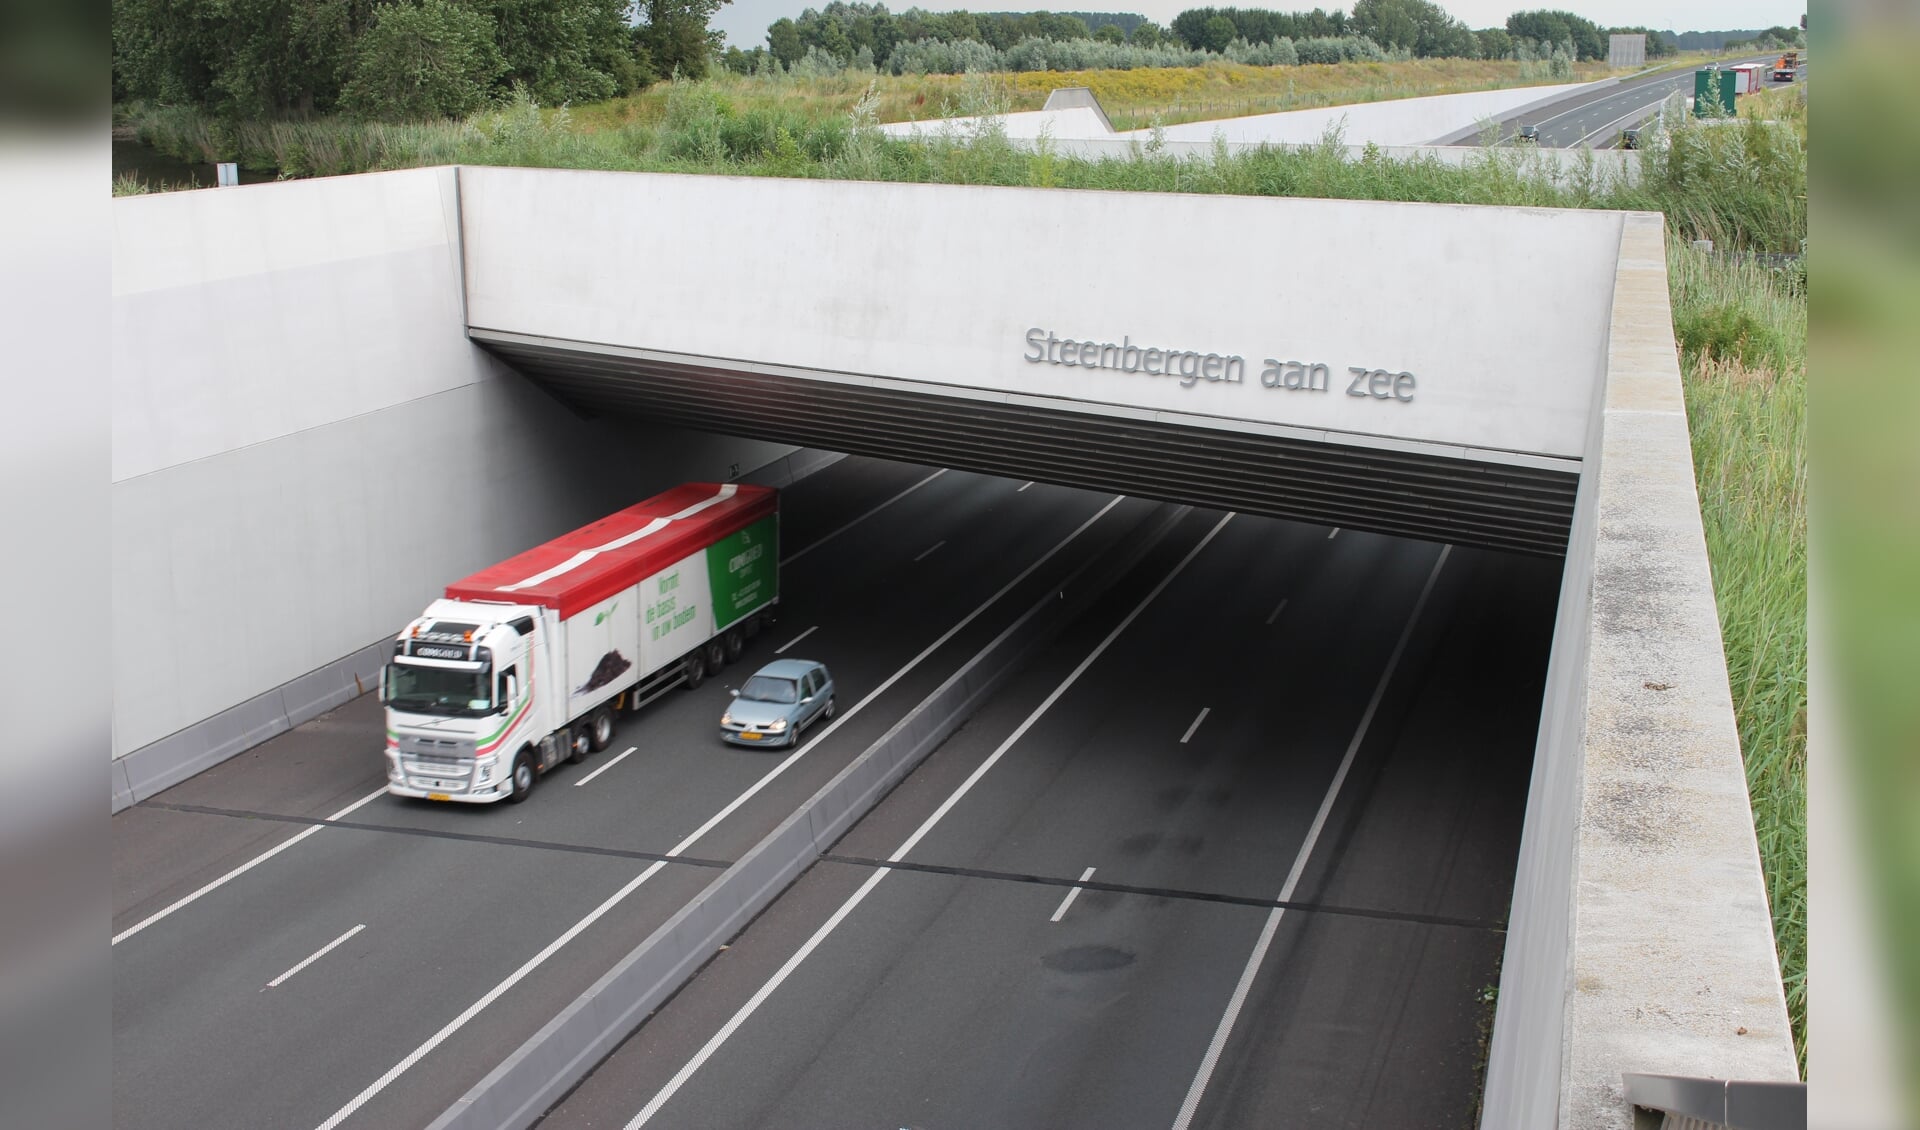 2019 kent een toename aan ongelukken op het A4 traject Dinteloord-Bergen op Zoom. FOTO CLAUDIA KOOLE 